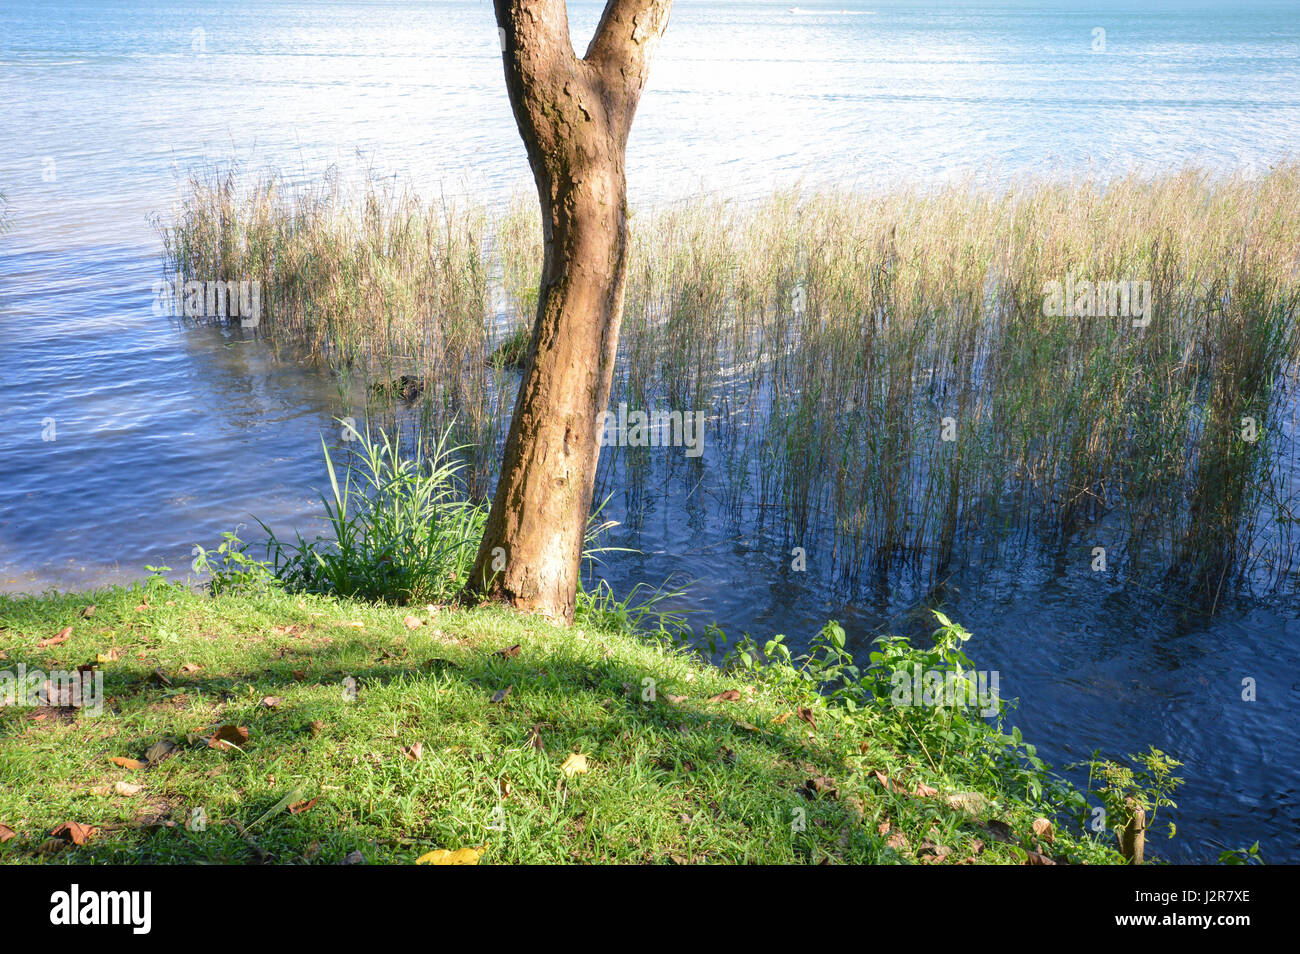 Bäume und Vegetation am Ufer des Sees izabal - der größte See in Guatemala, Mittelamerika. Stockfoto